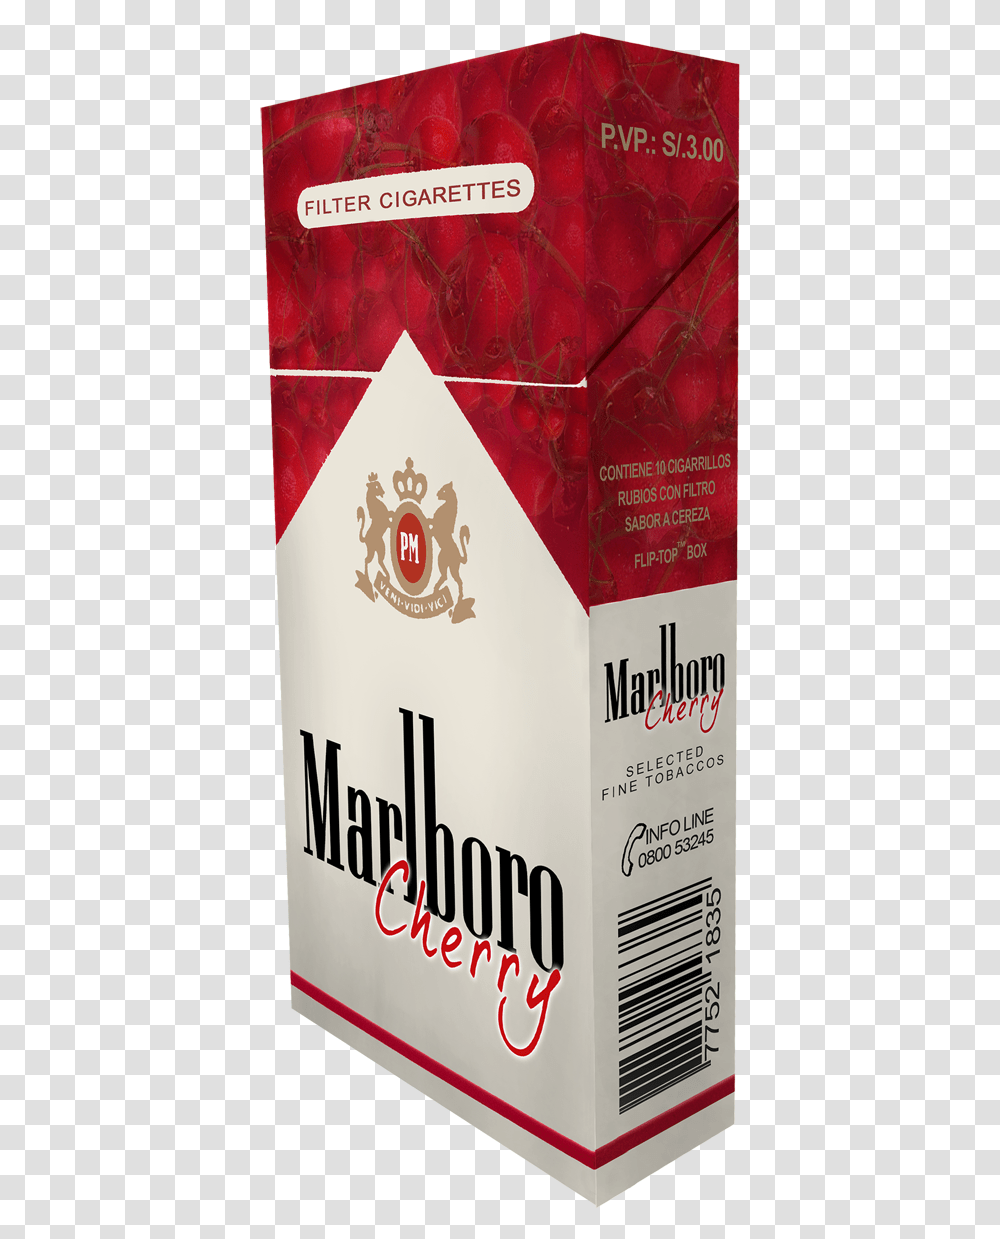 Marlboro Caja De Cigarros, Flour, Powder, Food, Poster Transparent Png